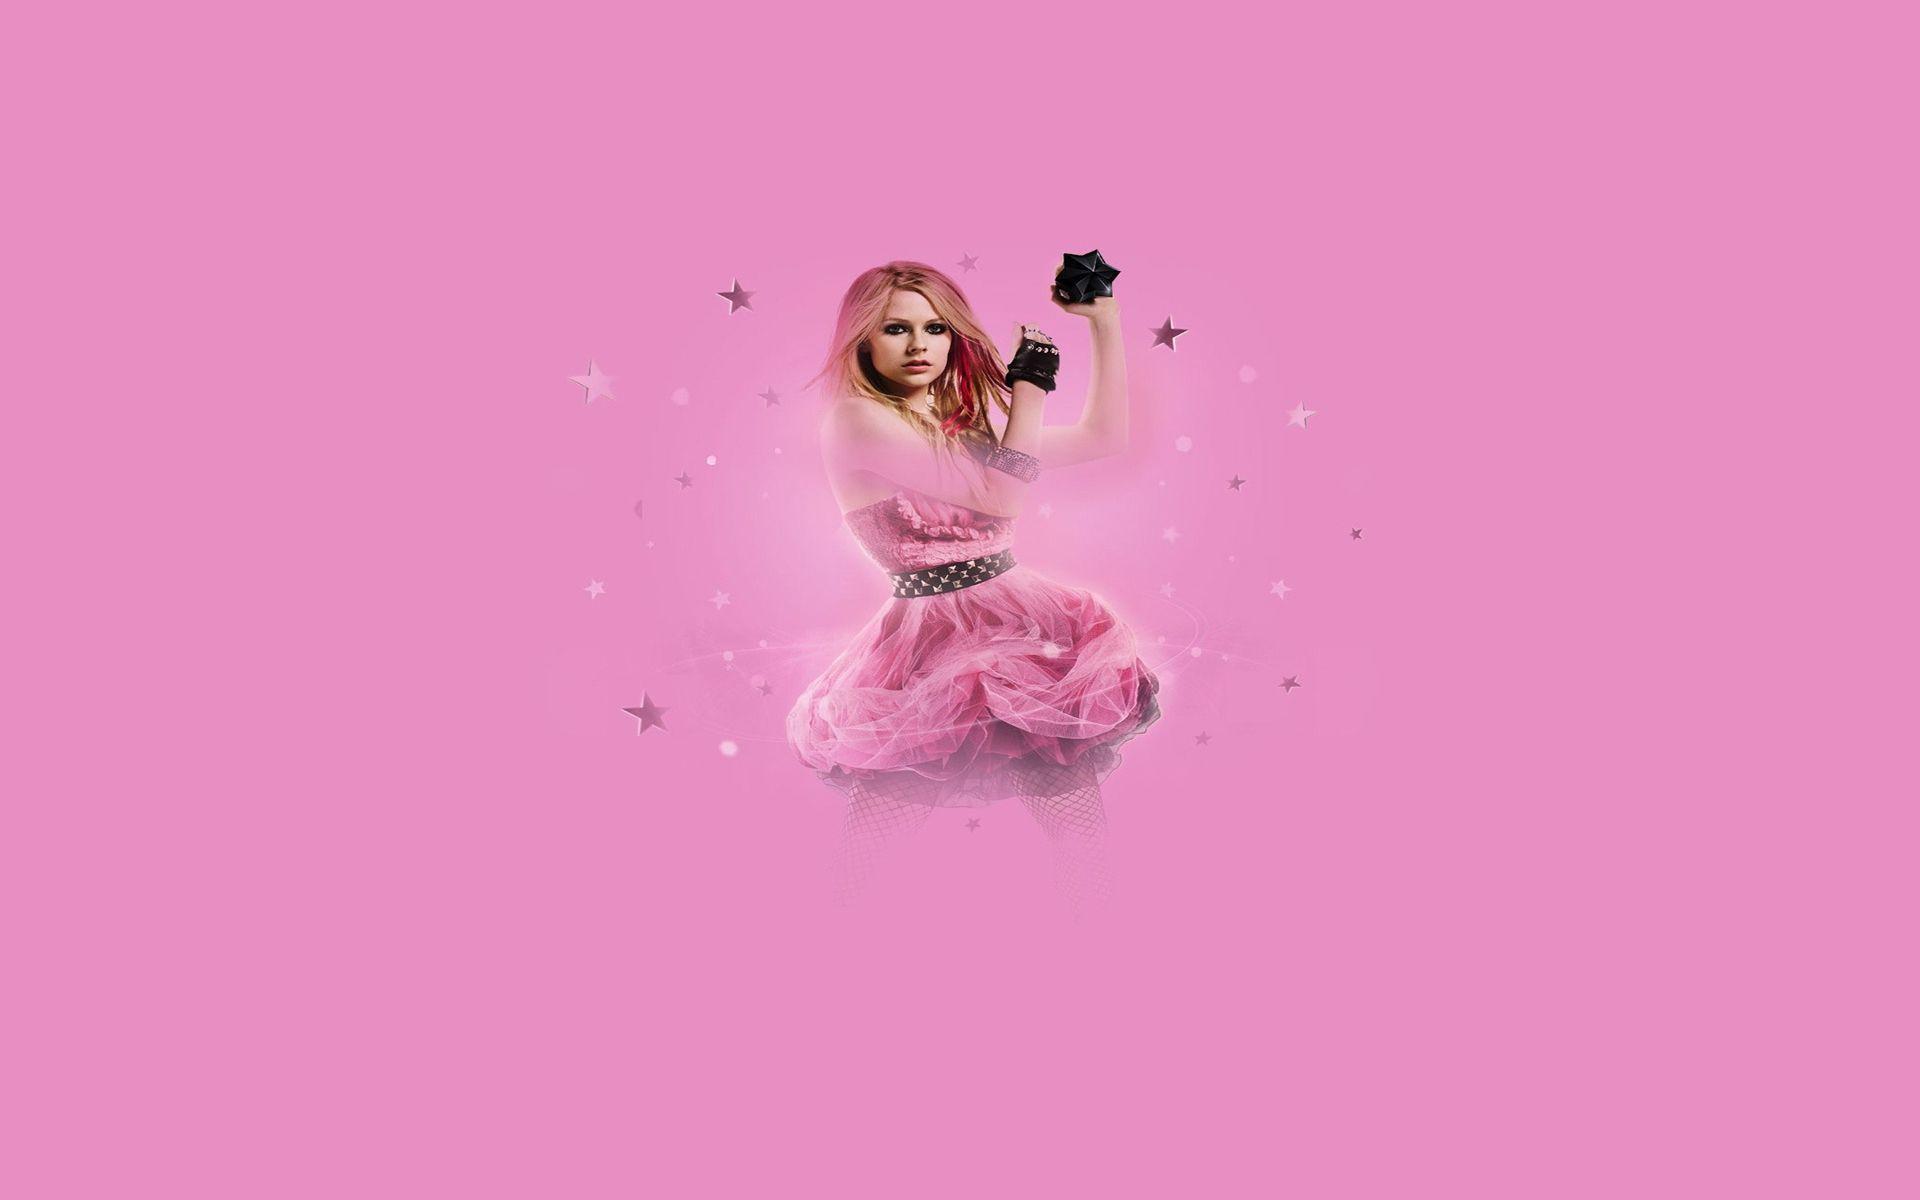 Avril, Singer, Music, Dance, Female, Pink, Wallpaper. Free